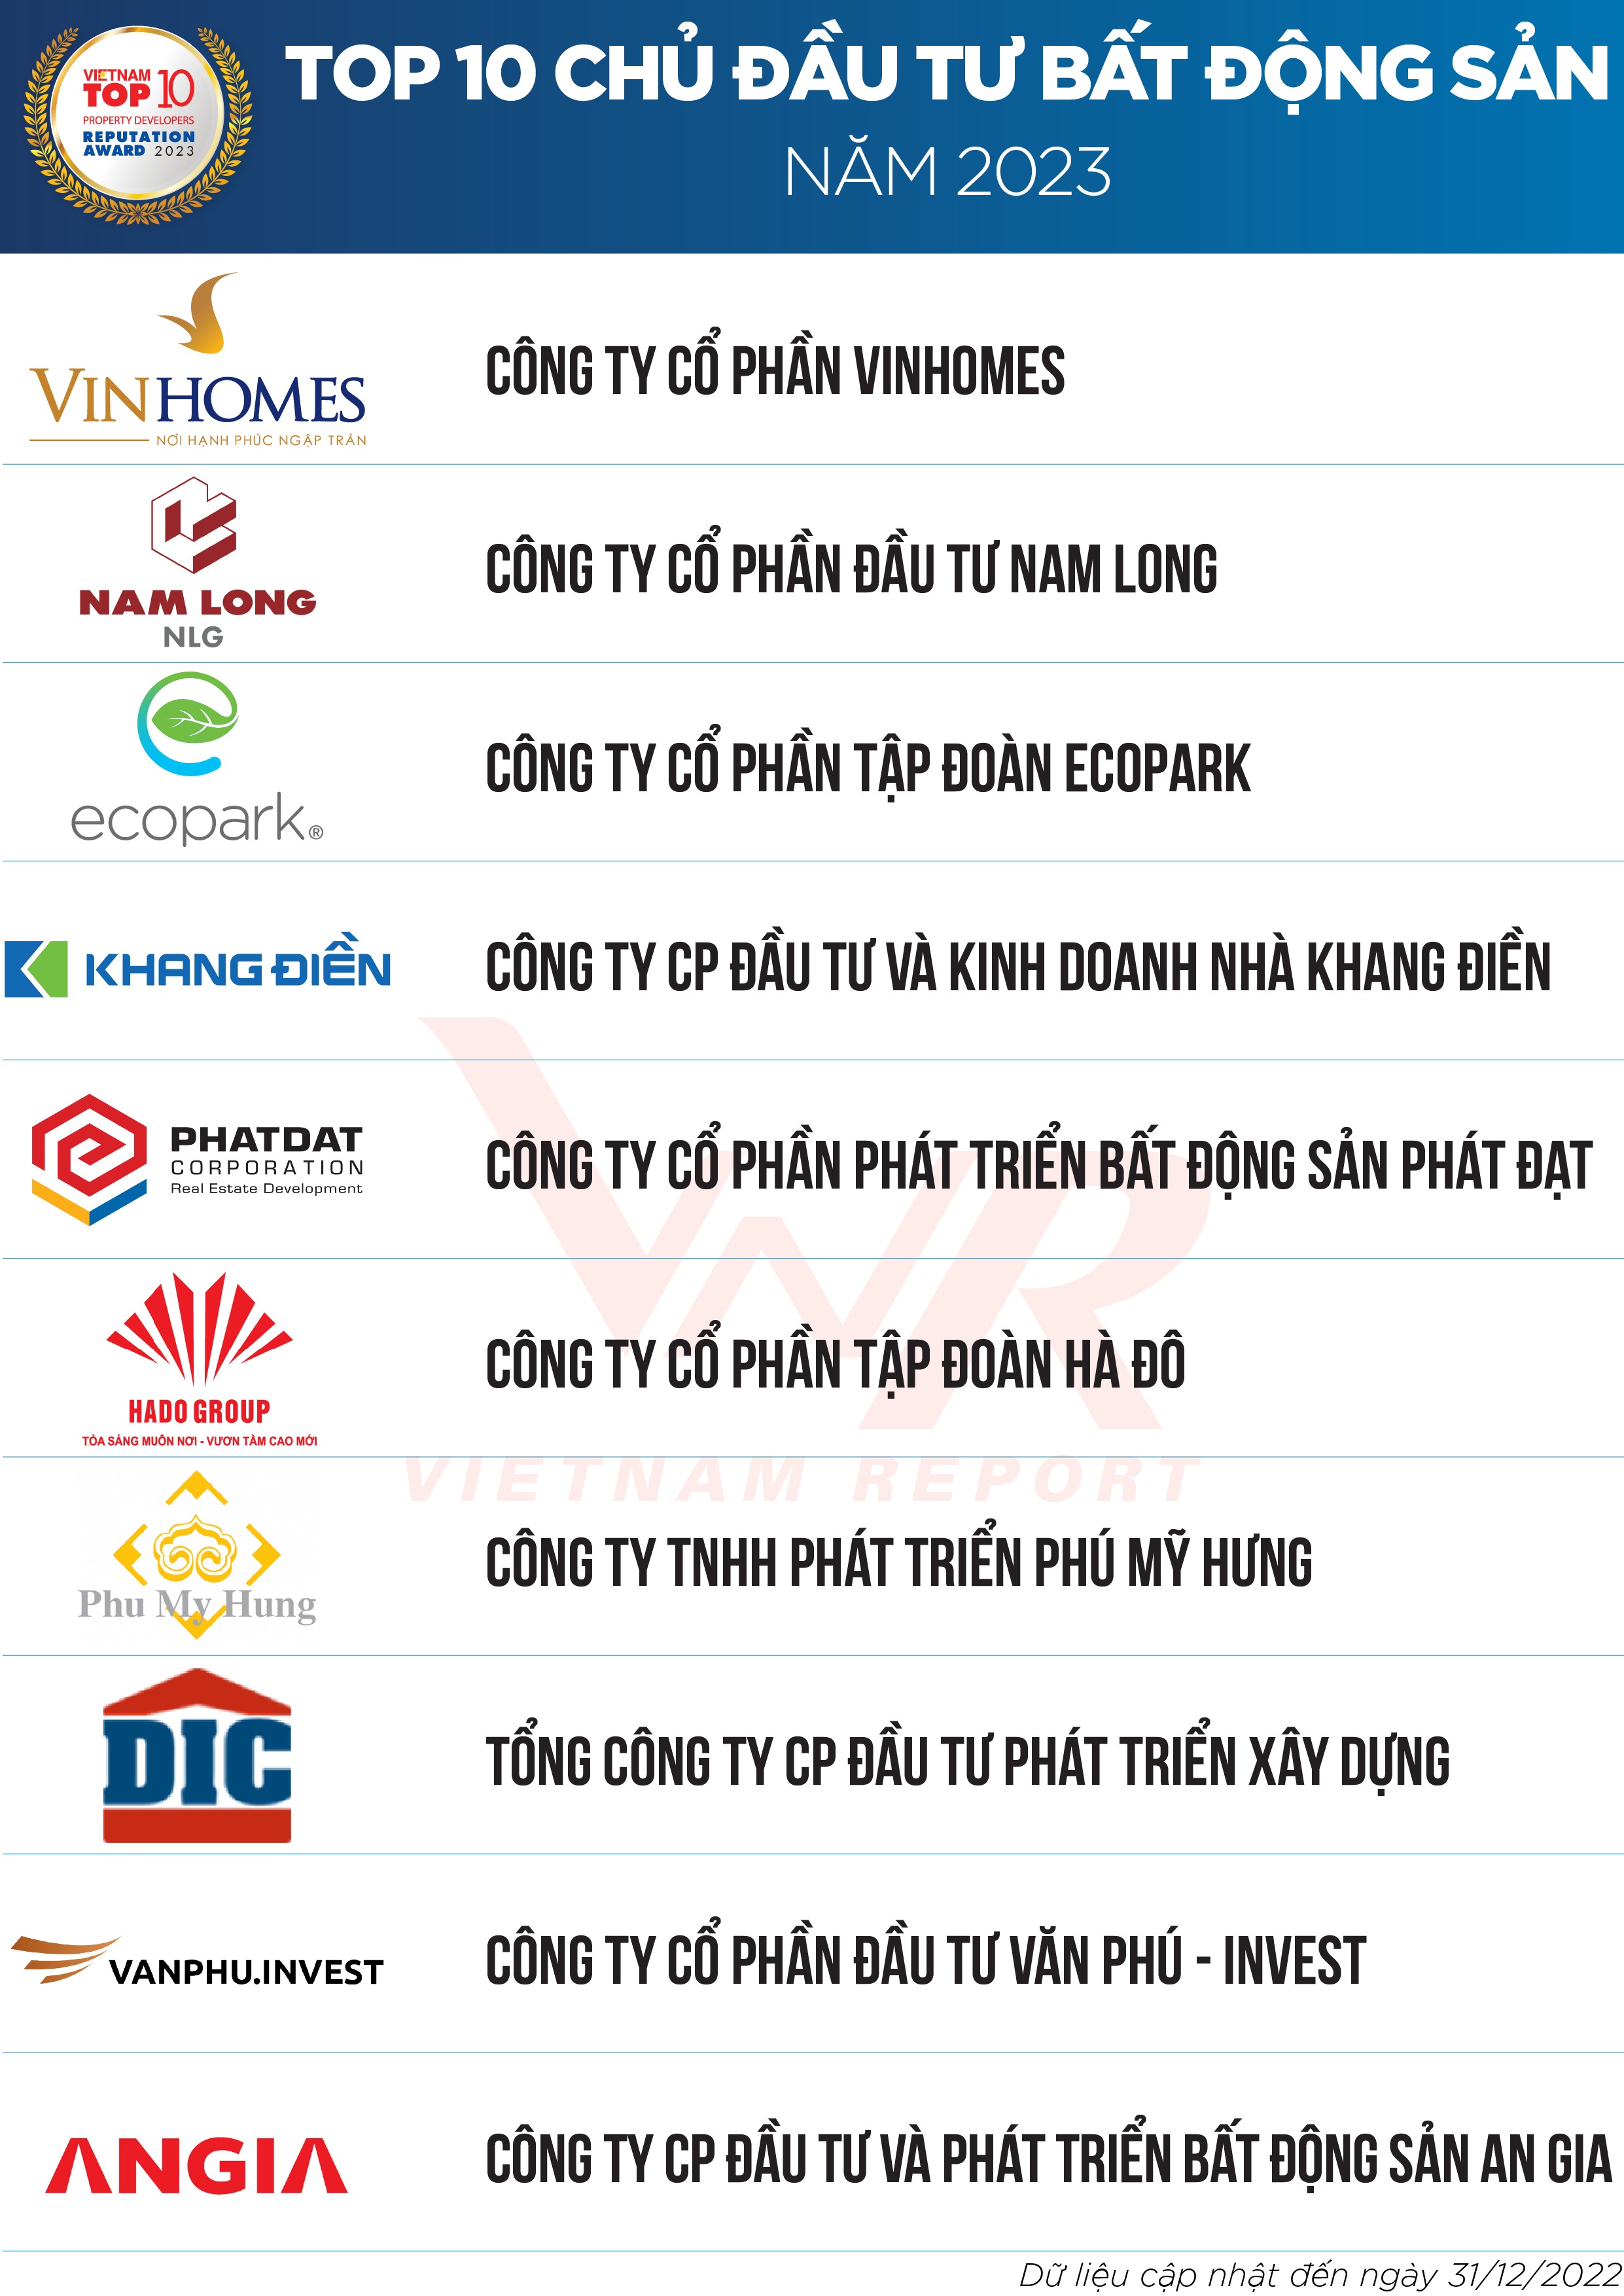 top 10 cong ty bat dong san nam 2023 1 Top 10 Công ty Bất động sản năm 2023